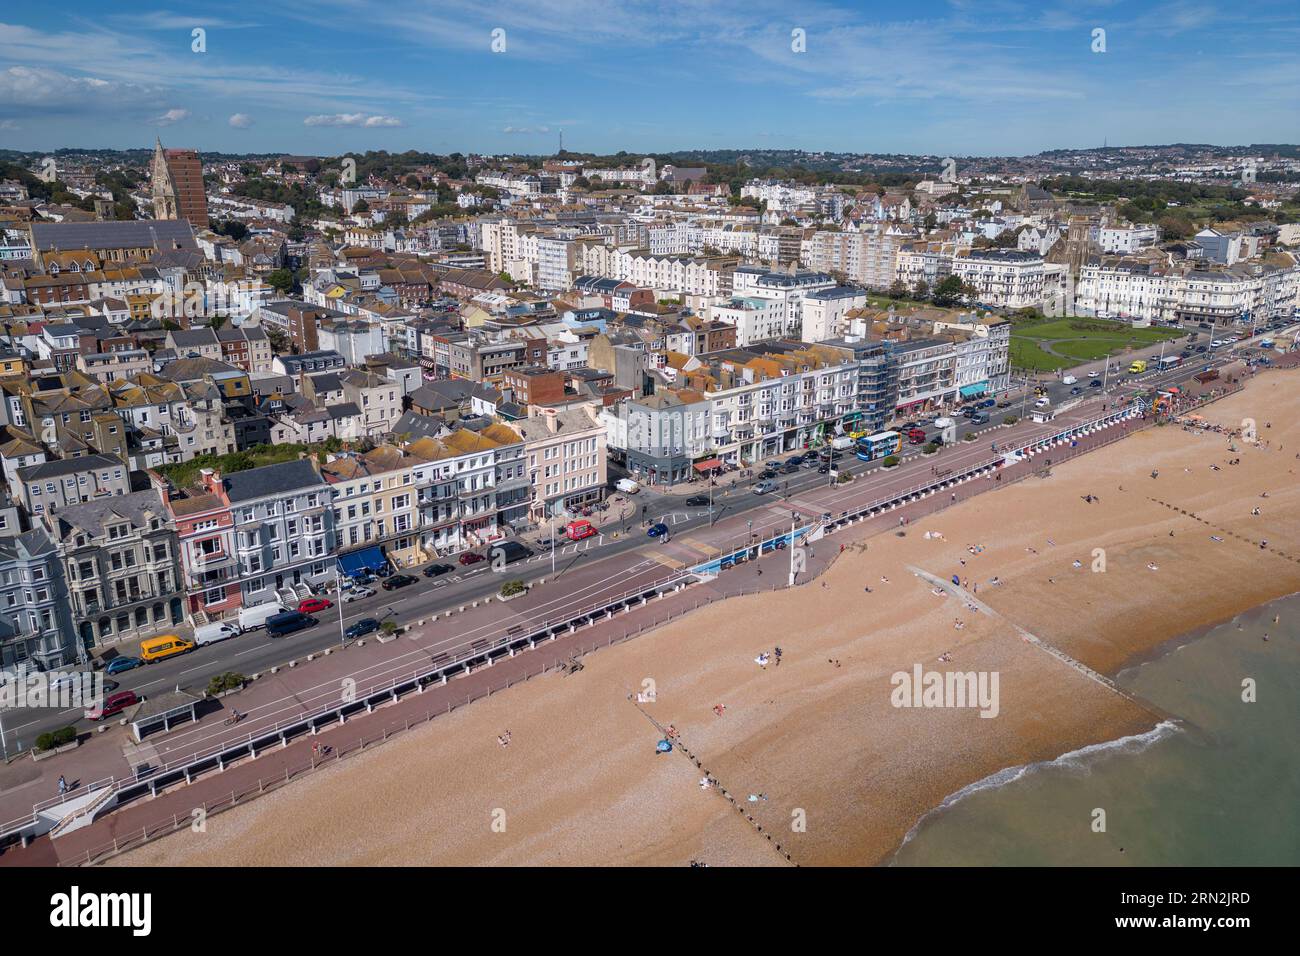 Vue aérienne des propriétés (hôtels compris) sur le front de mer à Hastings, East Sussex, Royaume-Uni. Banque D'Images